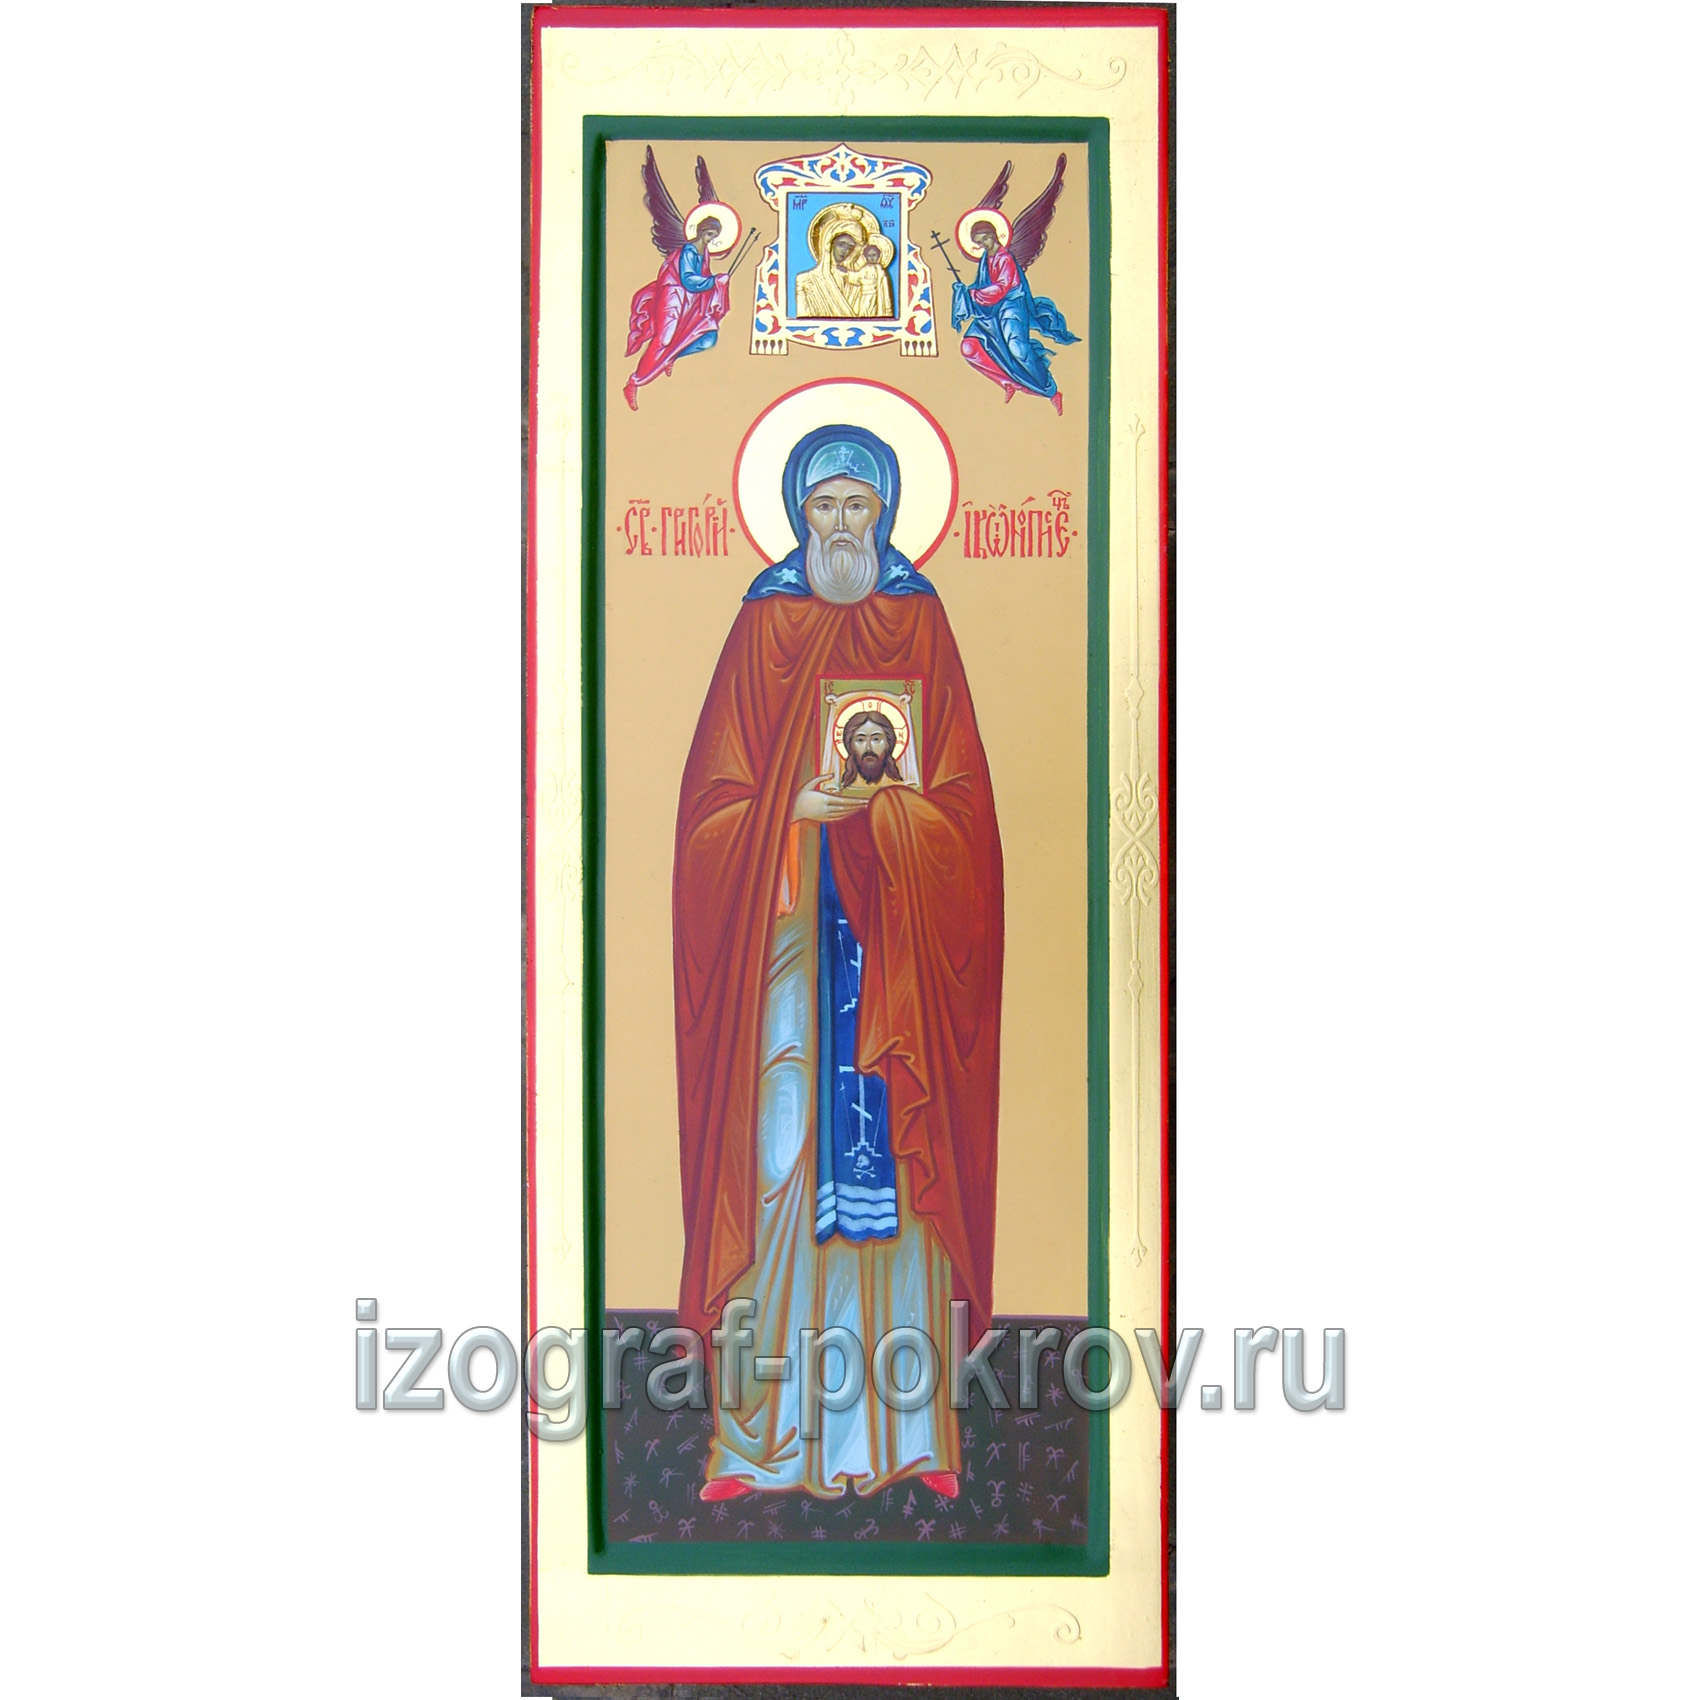 Мерная икона Григорий Иконописец с иконкой Богородицы